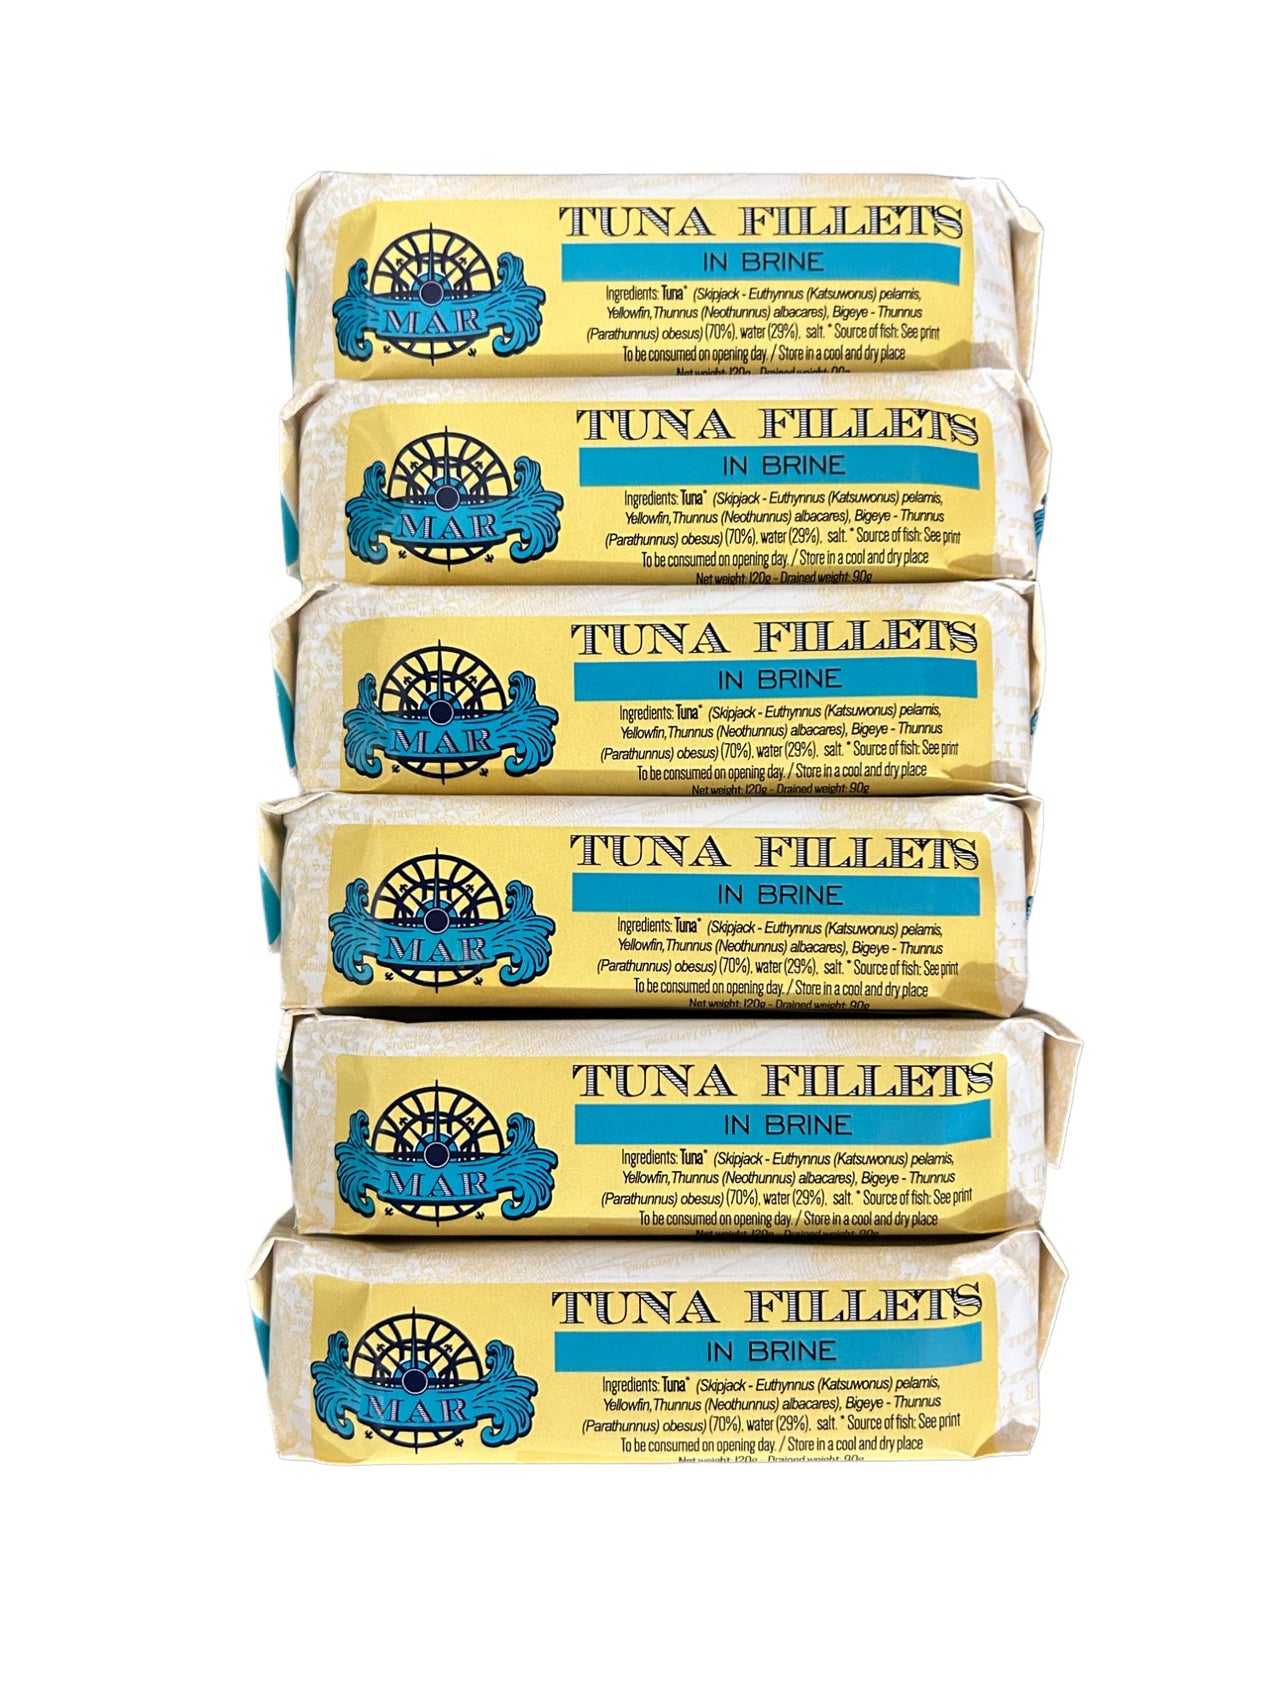 MAR Brand Tuna Fillets in Brine - 6 Pack